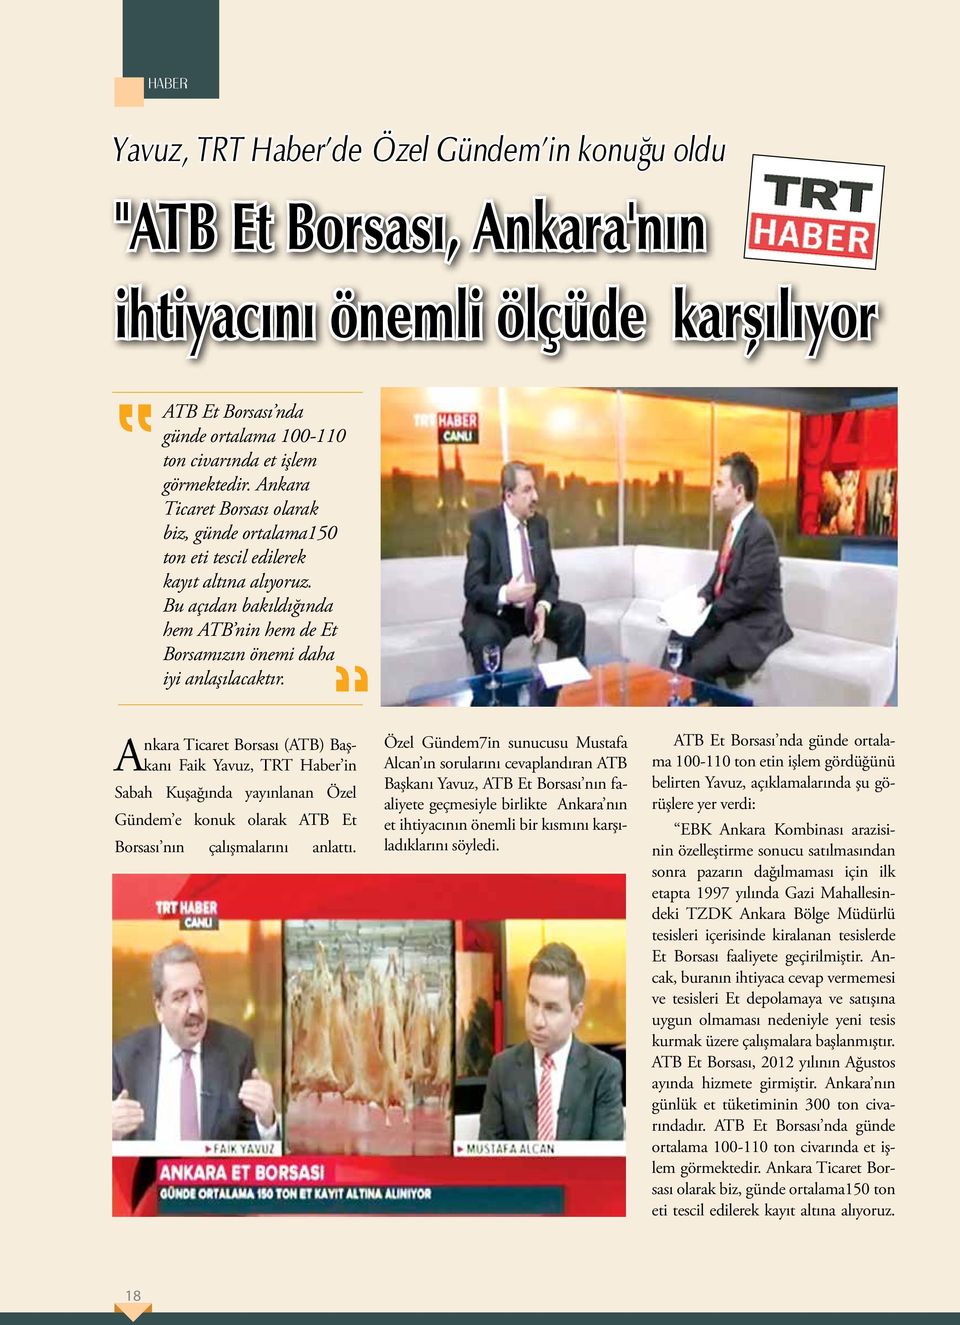 Ankara Ticaret Borsası (ATB) Başkanı Faik Yavuz, TRT Haber in Sabah Kuşağında yayınlanan Özel Gündem e konuk olarak ATB Et Borsası nın çalışmalarını anlattı.